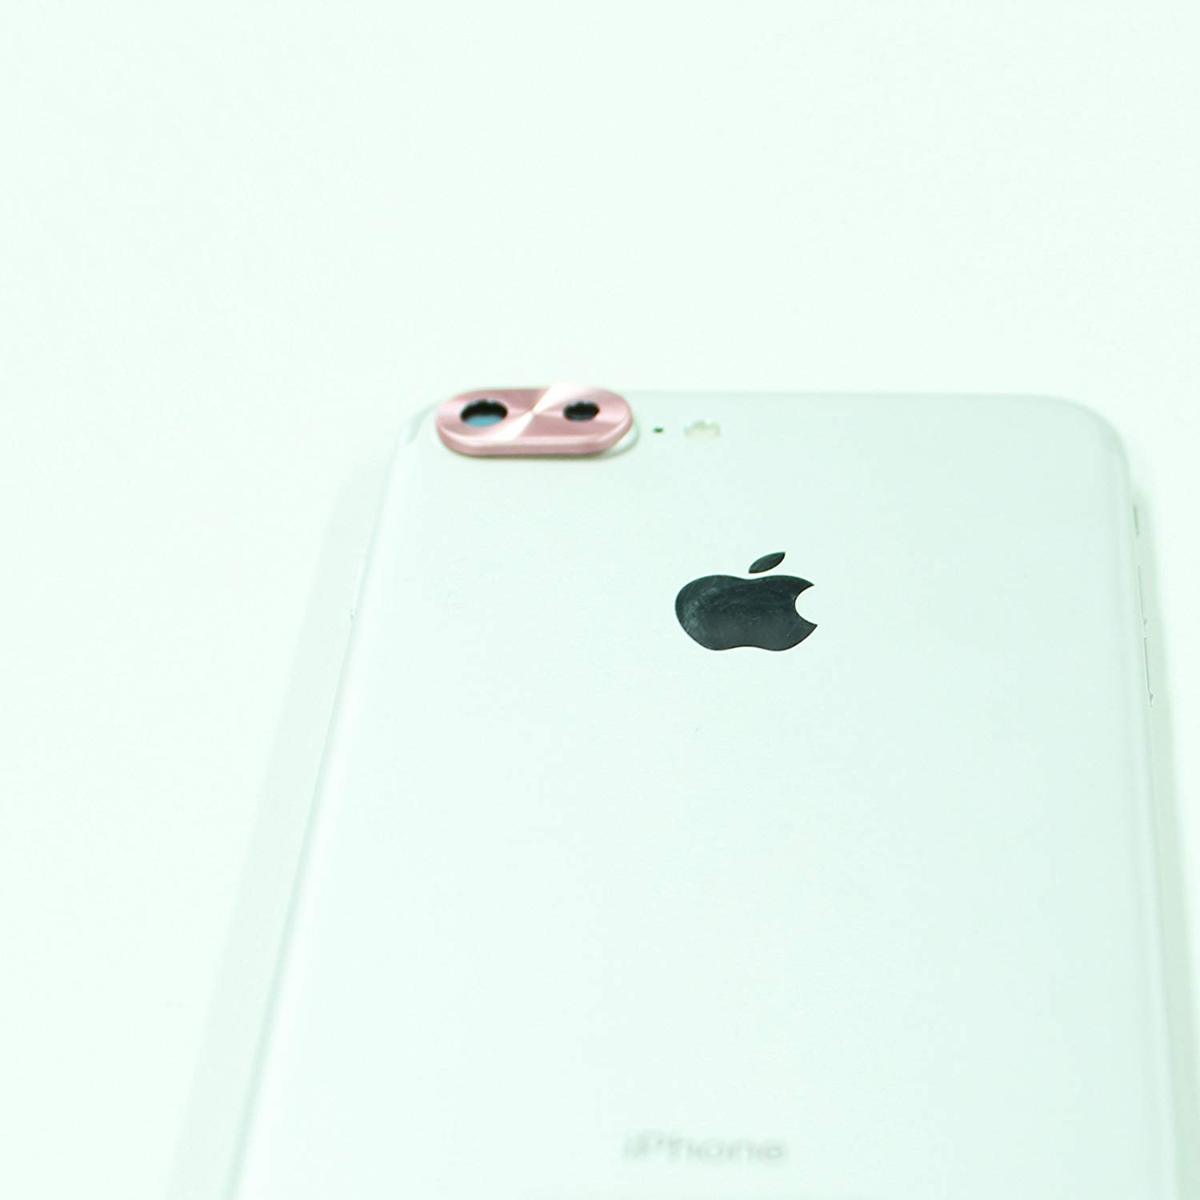 即決・送料込) iPhone 8 Plus/iPhone 7 Plus 対応 背面カメラレンズ保護カバー ローズゴールド アルミ素材 レンズガード プロテクター_画像4